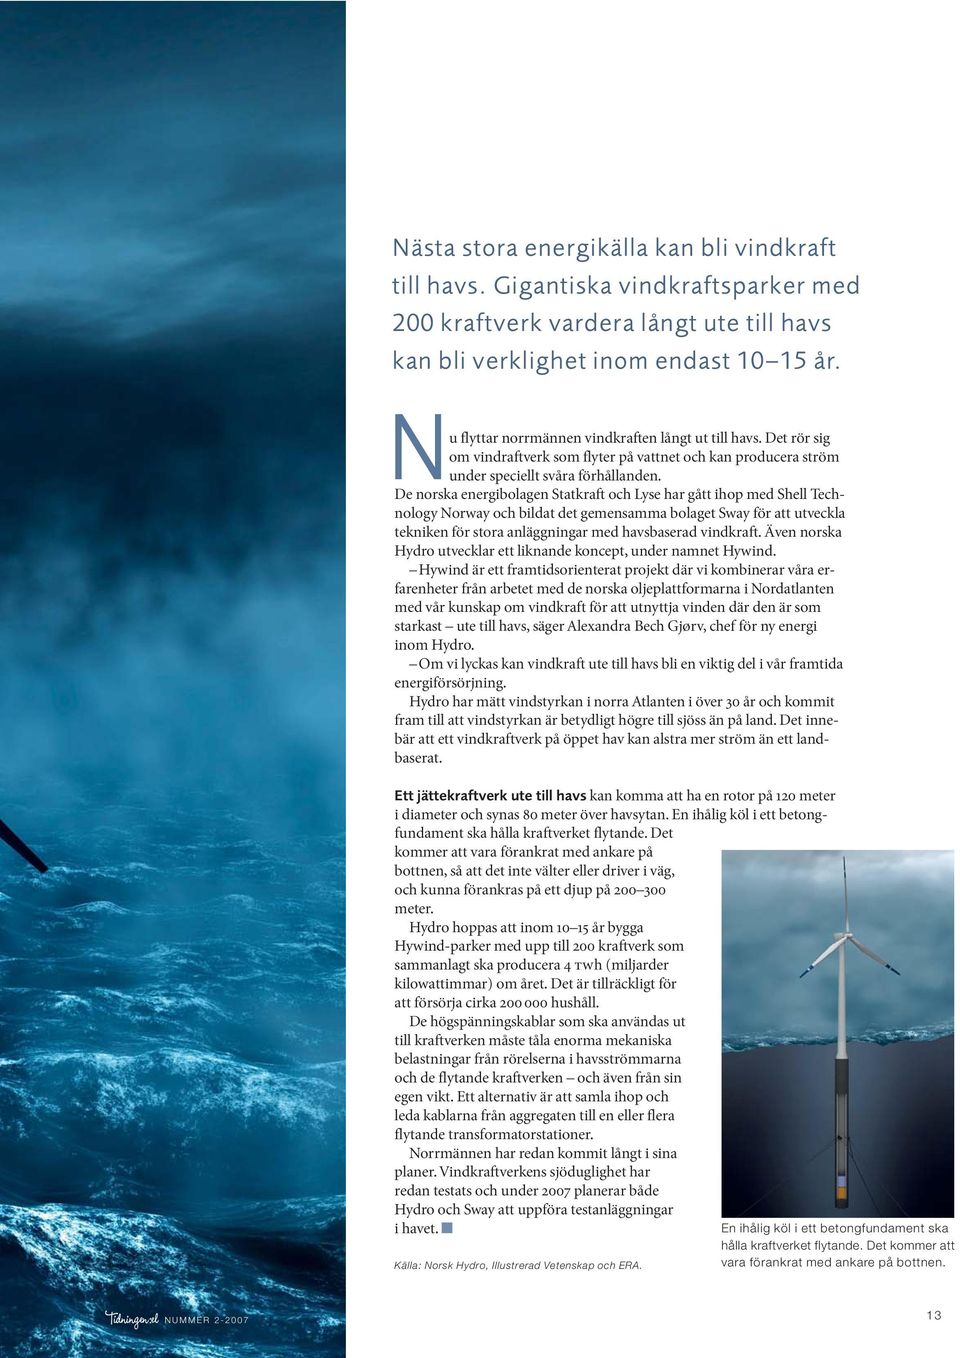 De norska energibolagen Statkraft och Lyse har gått ihop med Shell Technology Norway och bildat det gemensamma bolaget Sway för att utveckla tekniken för stora anläggningar med havsbaserad vindkraft.